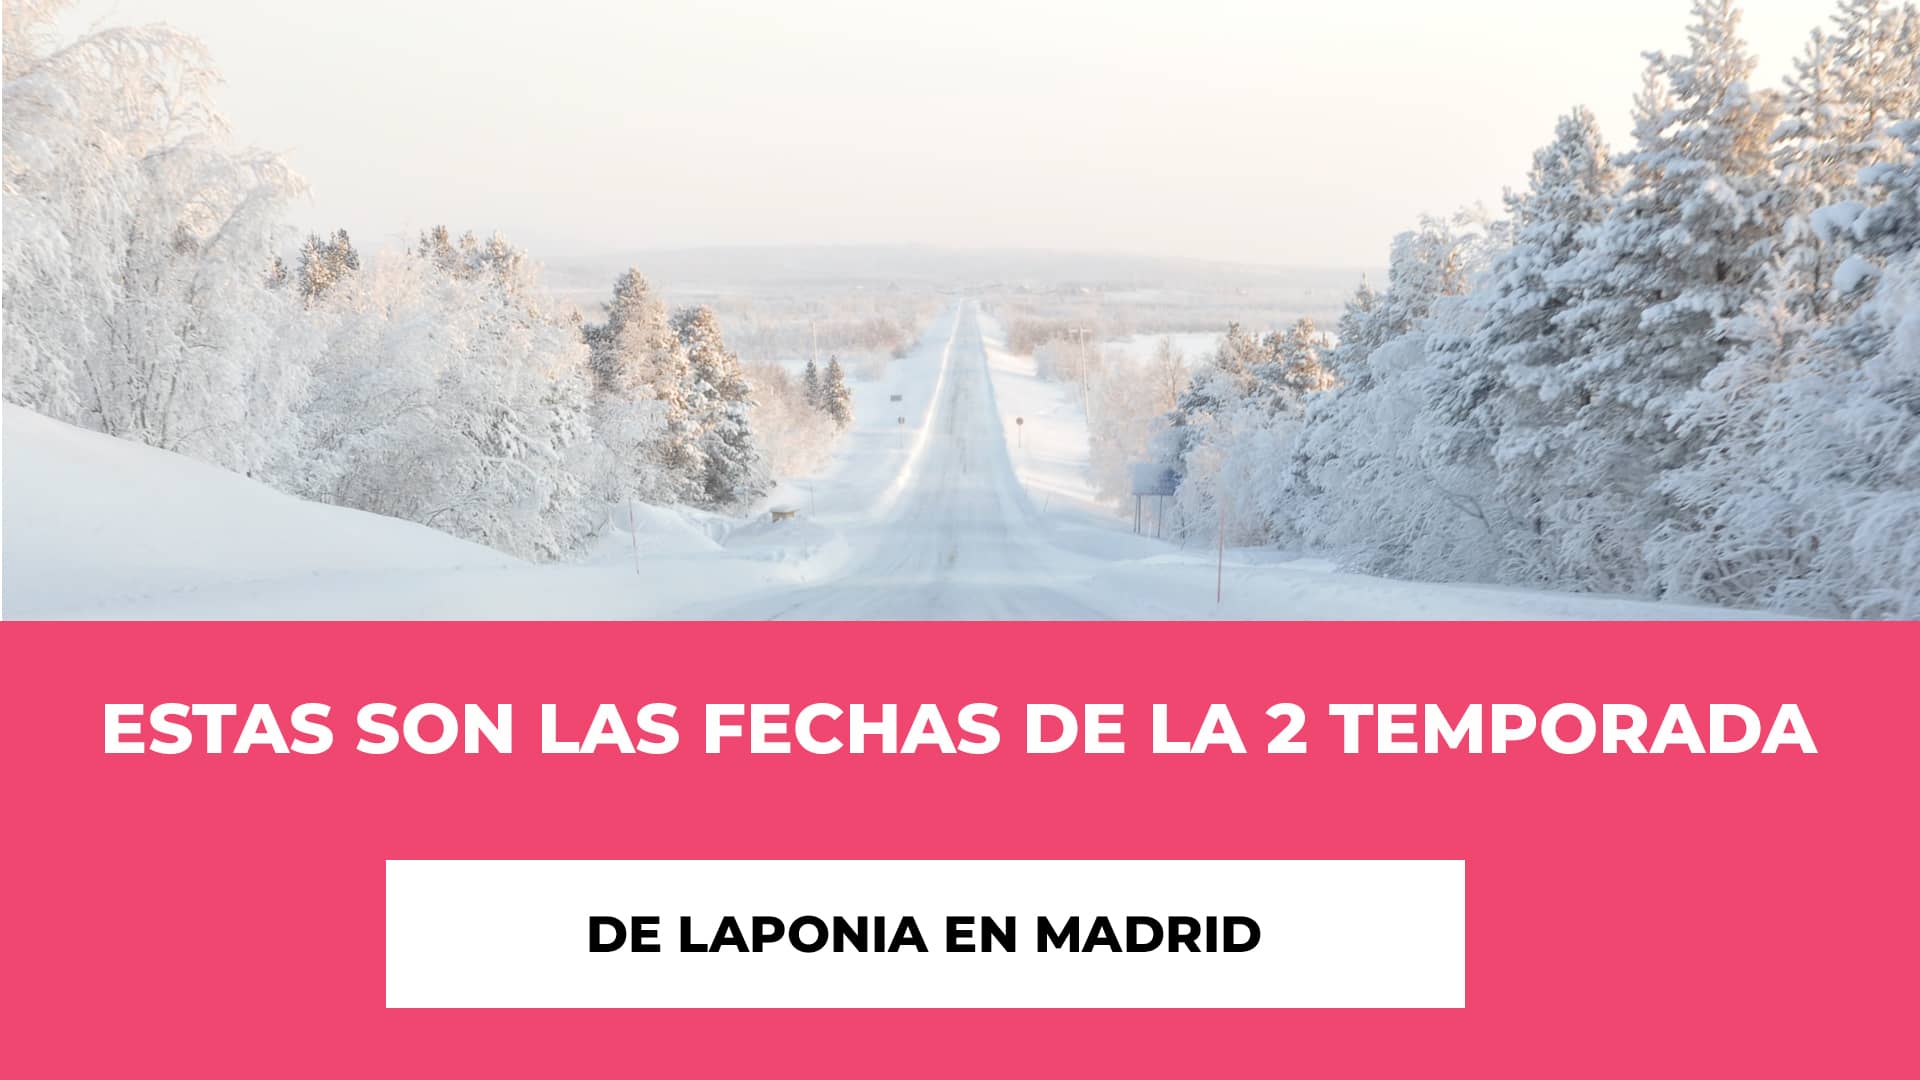 Estas son las Fechas de la 2 Temporada de Laponia en Madrid - Una comedia con preguntas - Fechas y lugar - Precios de las entradas